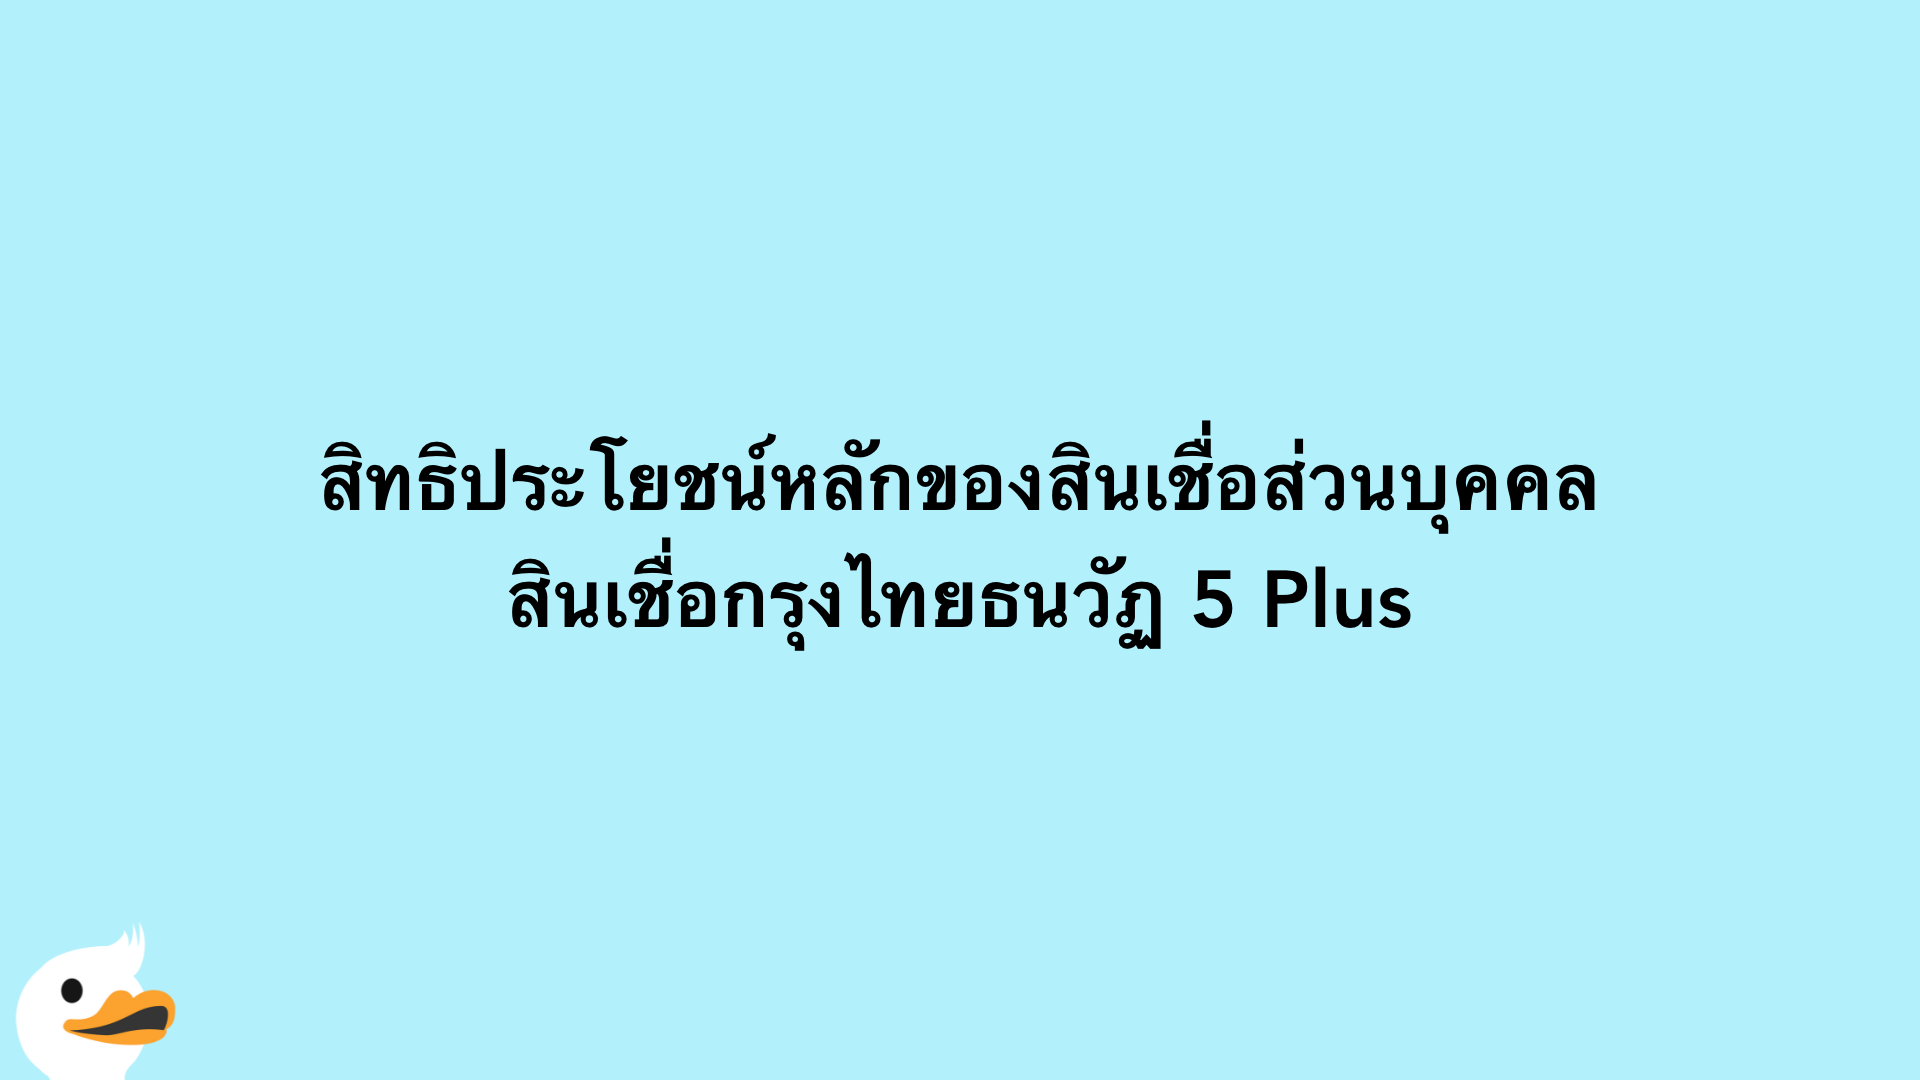 สิทธิประโยชน์หลักของสินเชื่อส่วนบุคคล สินเชื่อกรุงไทยธนวัฏ 5 Plus